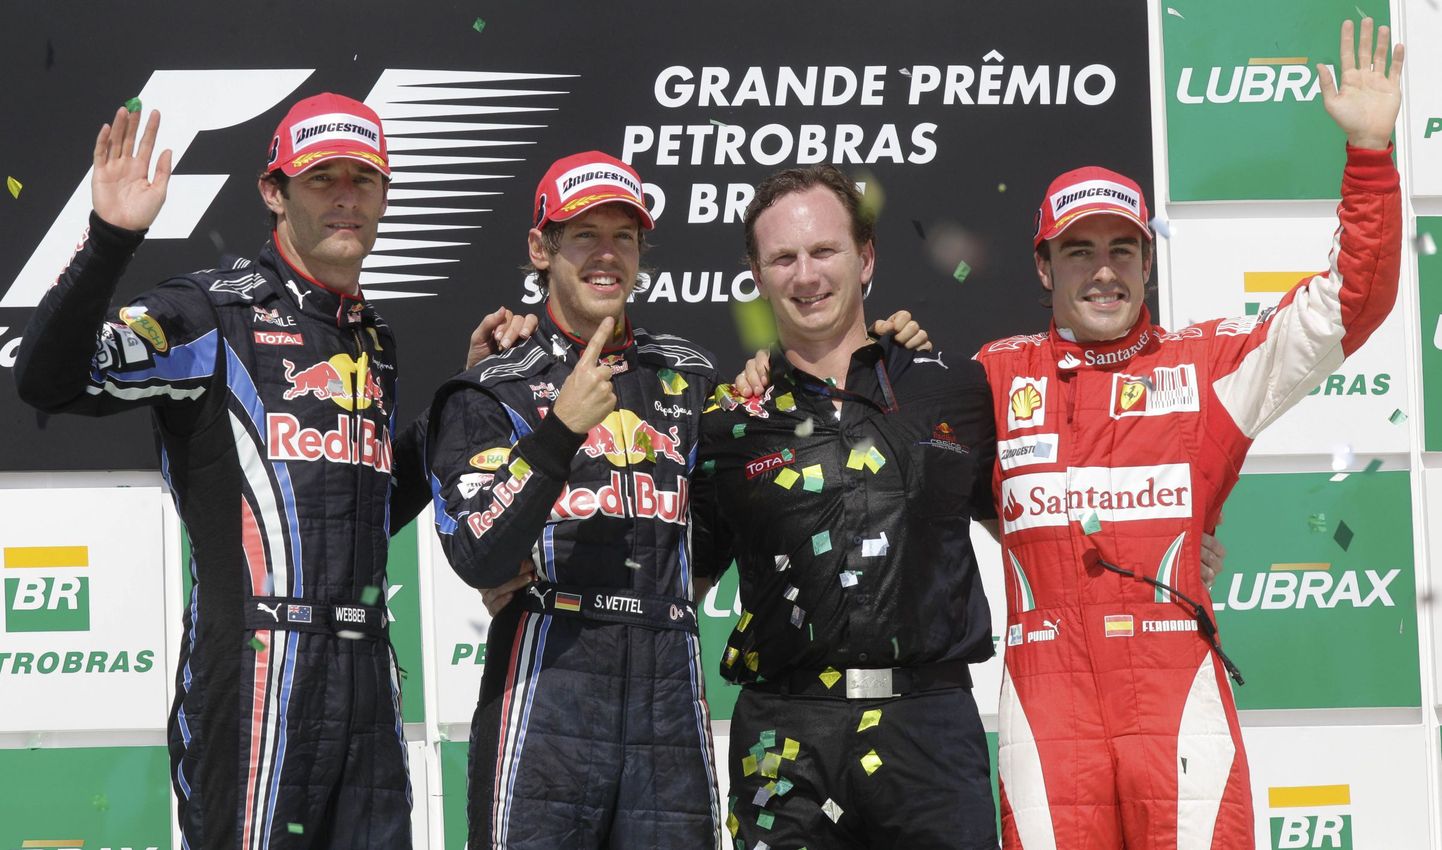 Red Bulli mehed Mark Webber, Sebastian Vettel ja Christian Horner ning üksik Ferrari piloot Fernando Alonso 2010. aastal. Tegelikult oli lähedal, et ka hispaanlane oleks selga tõmmanud Red Bulli võistlusvormi.